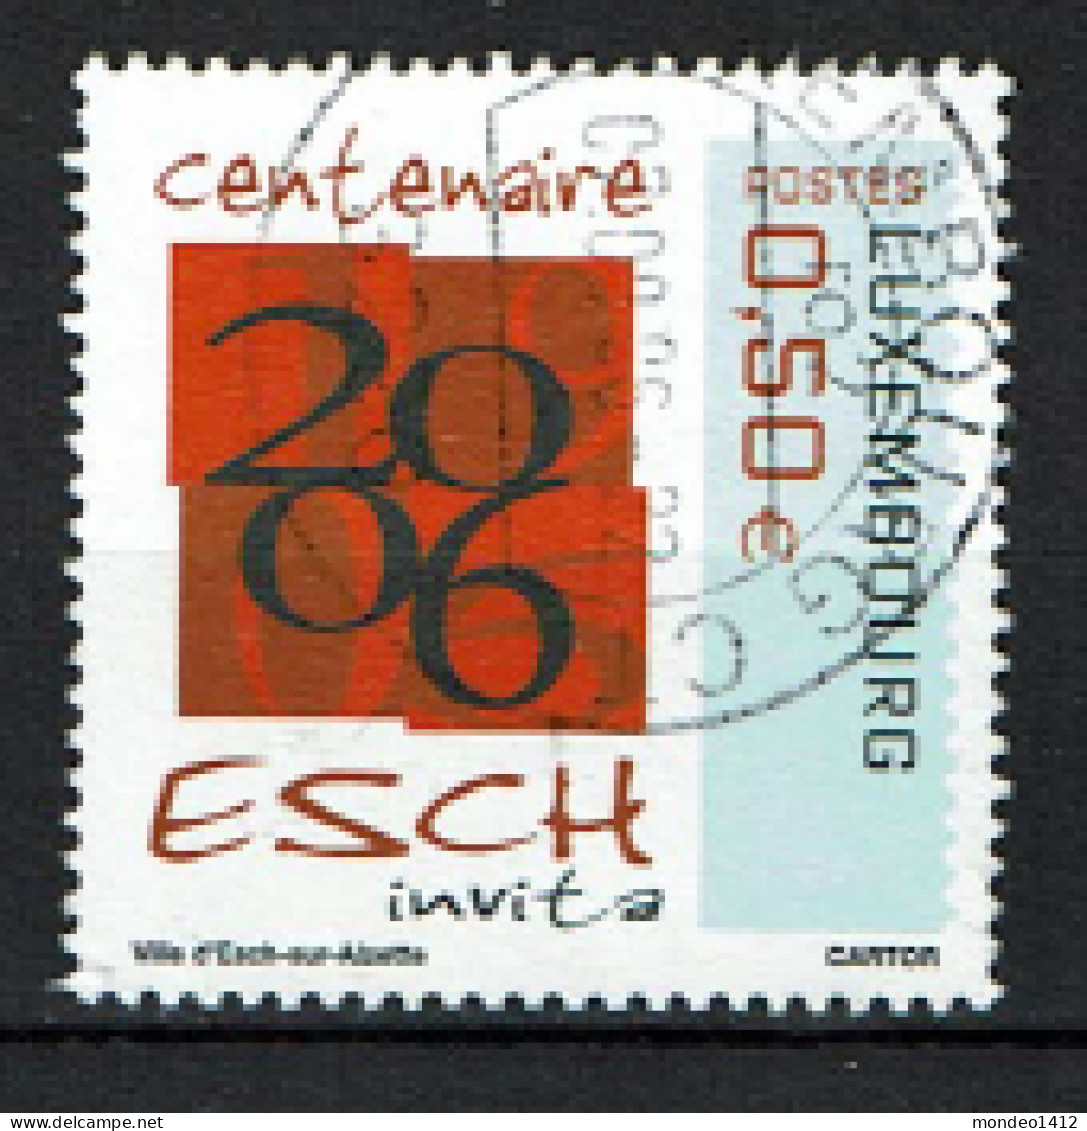 Luxembourg 2006 - YT 1658 - Centenaire D'Esch, Esch Centenary - Oblitérés